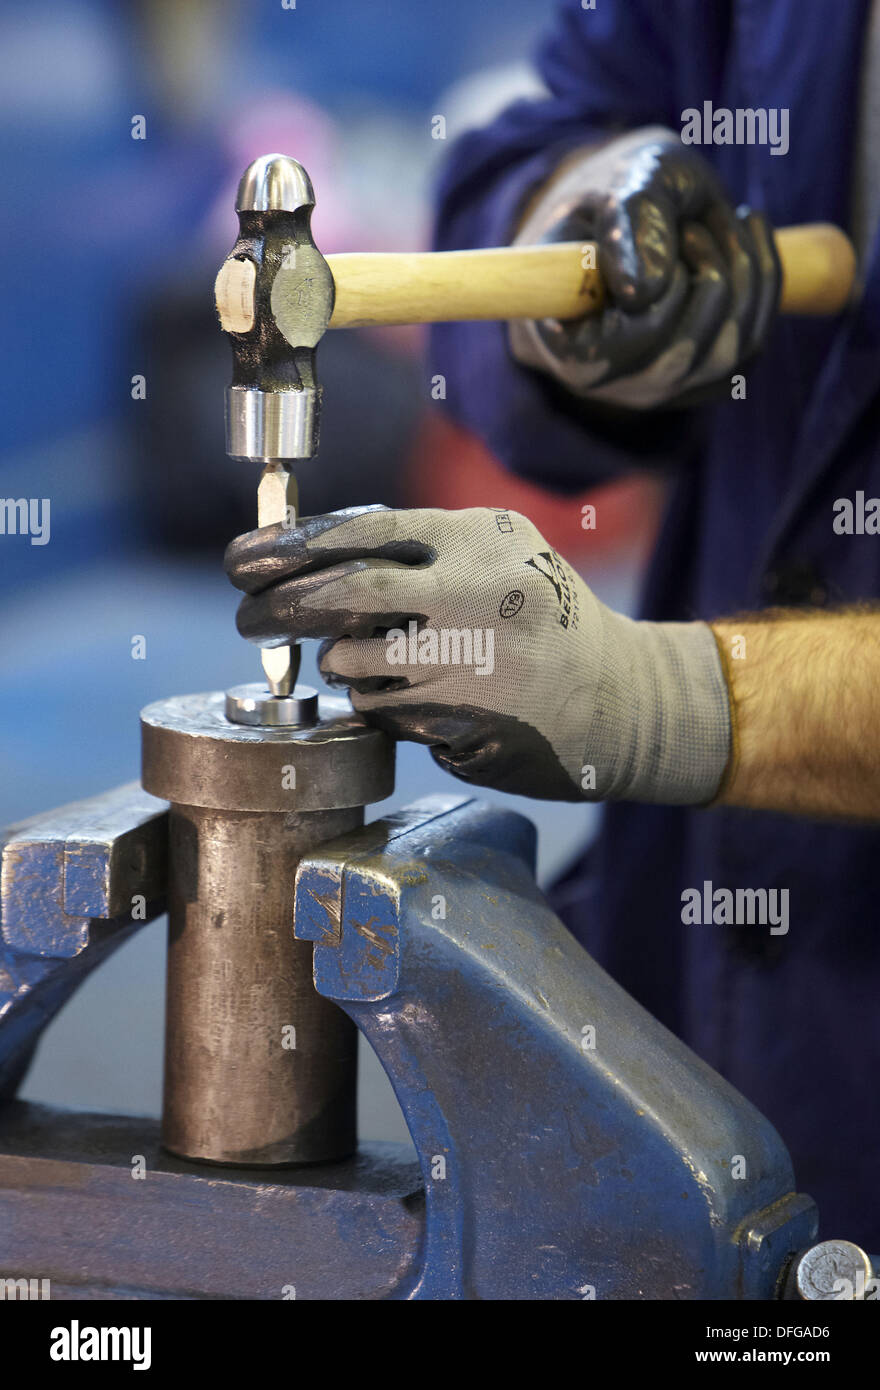 Steel marking, metallurgy Stock Photo